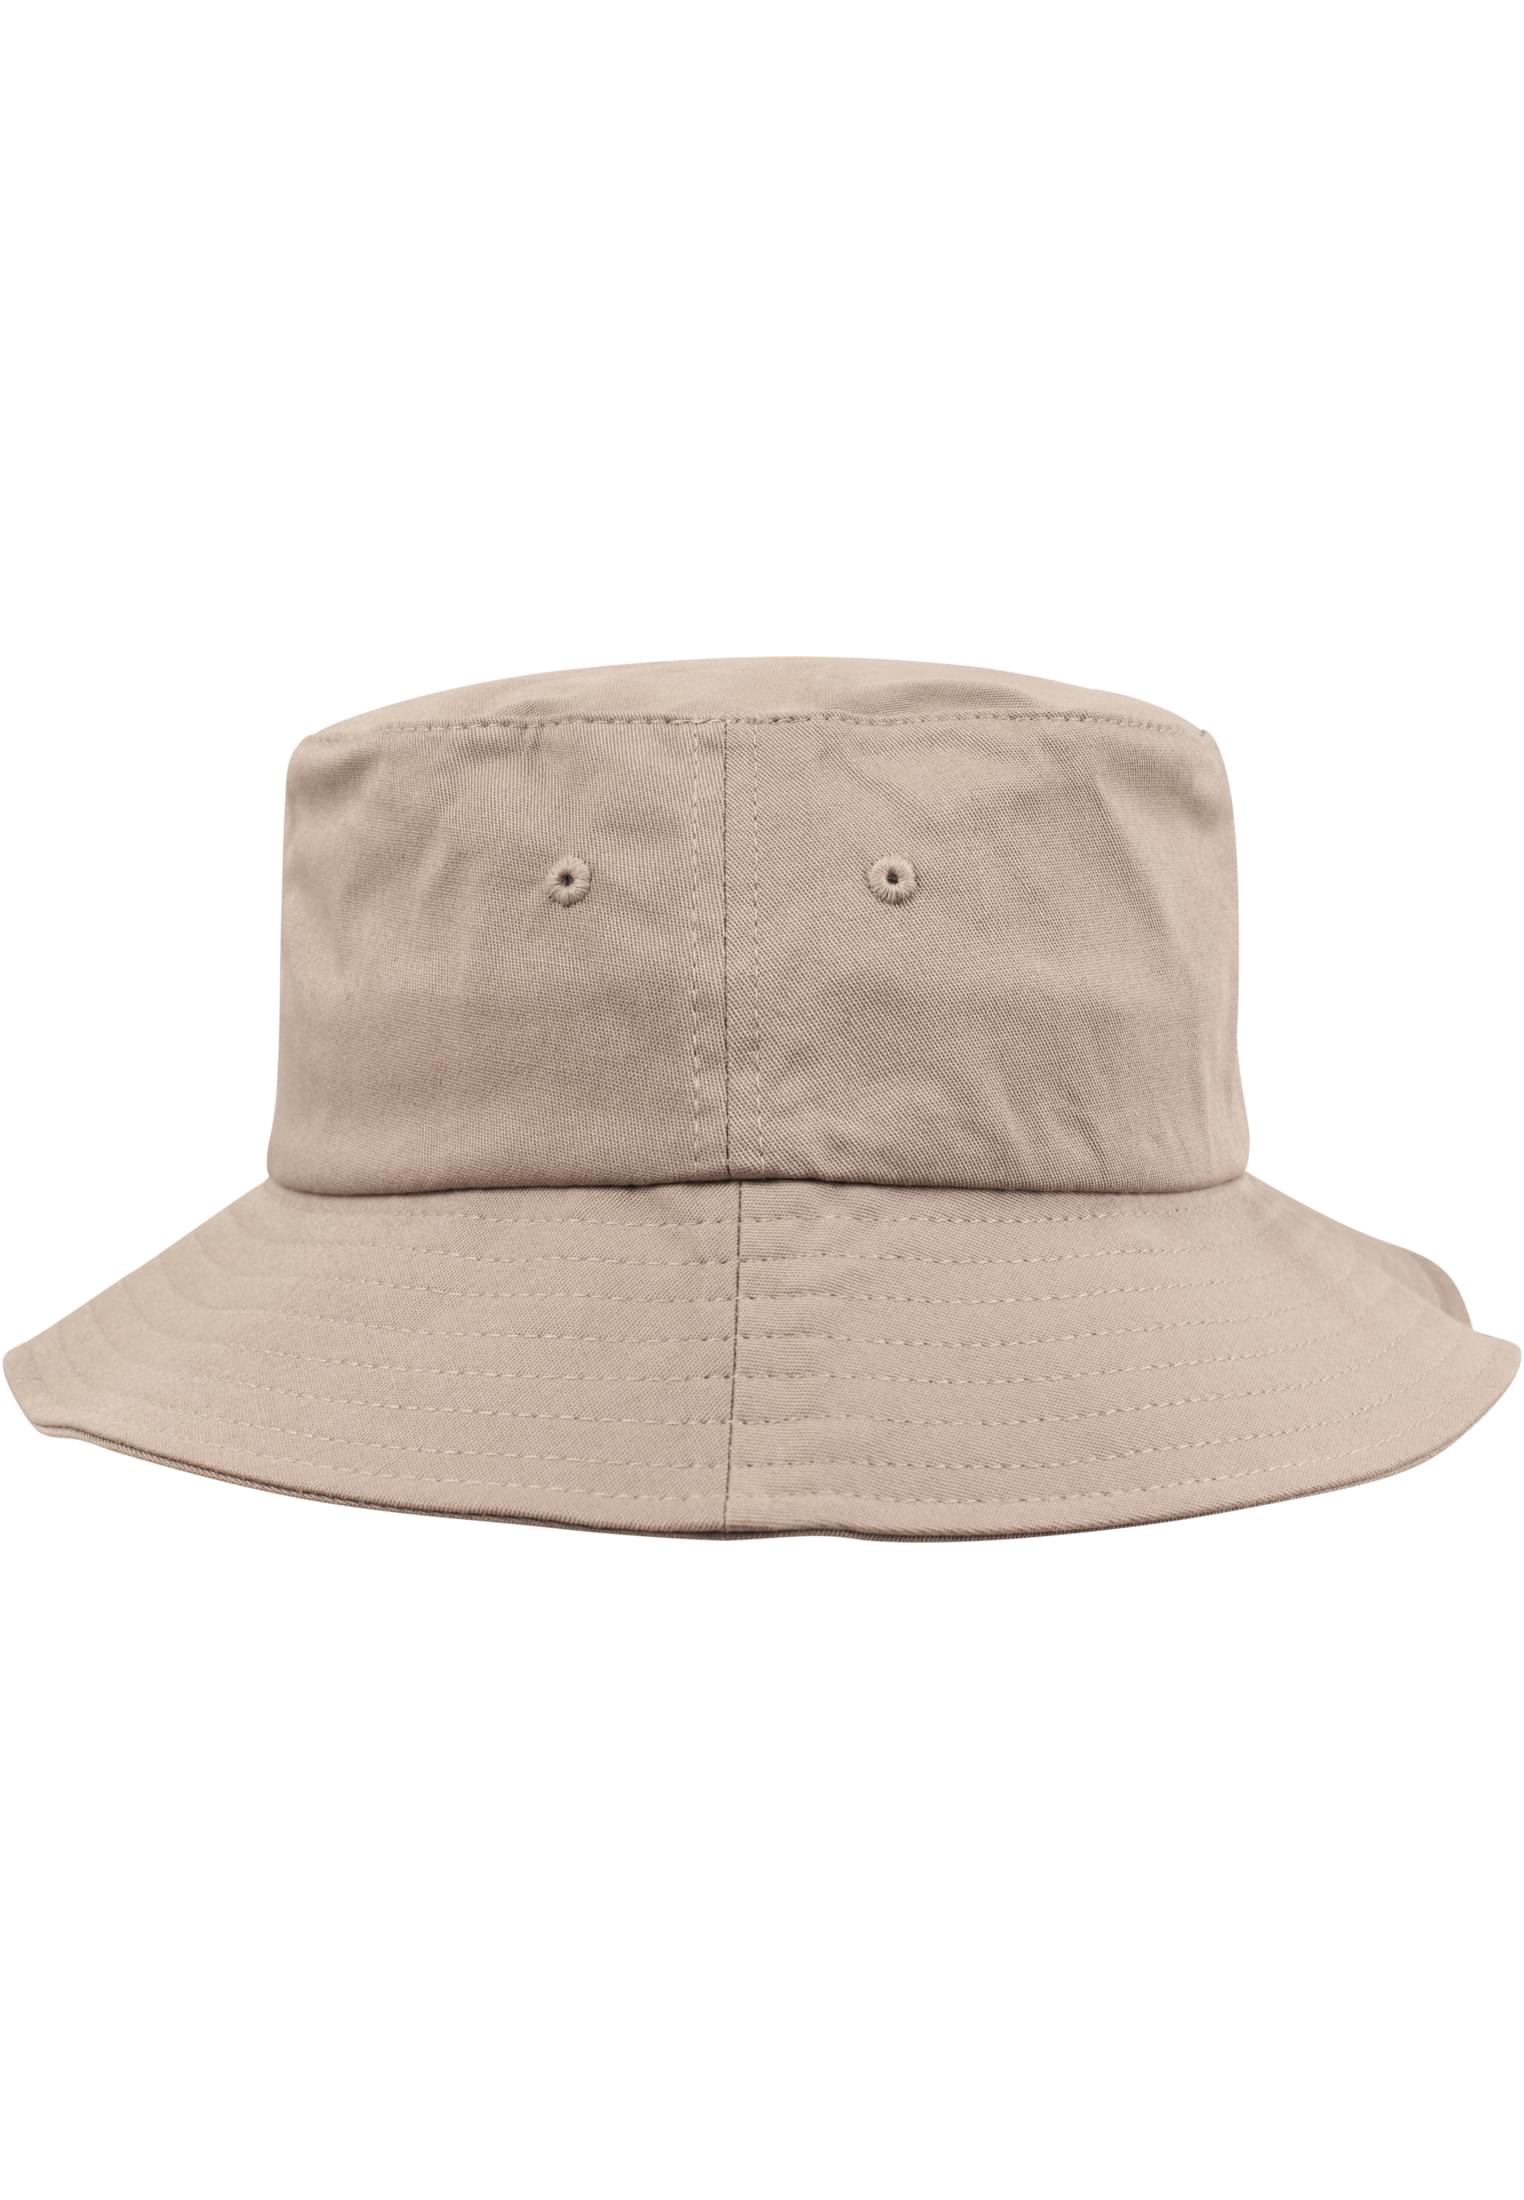 Flexfit Cotton Hat-5003 Twill Bucket